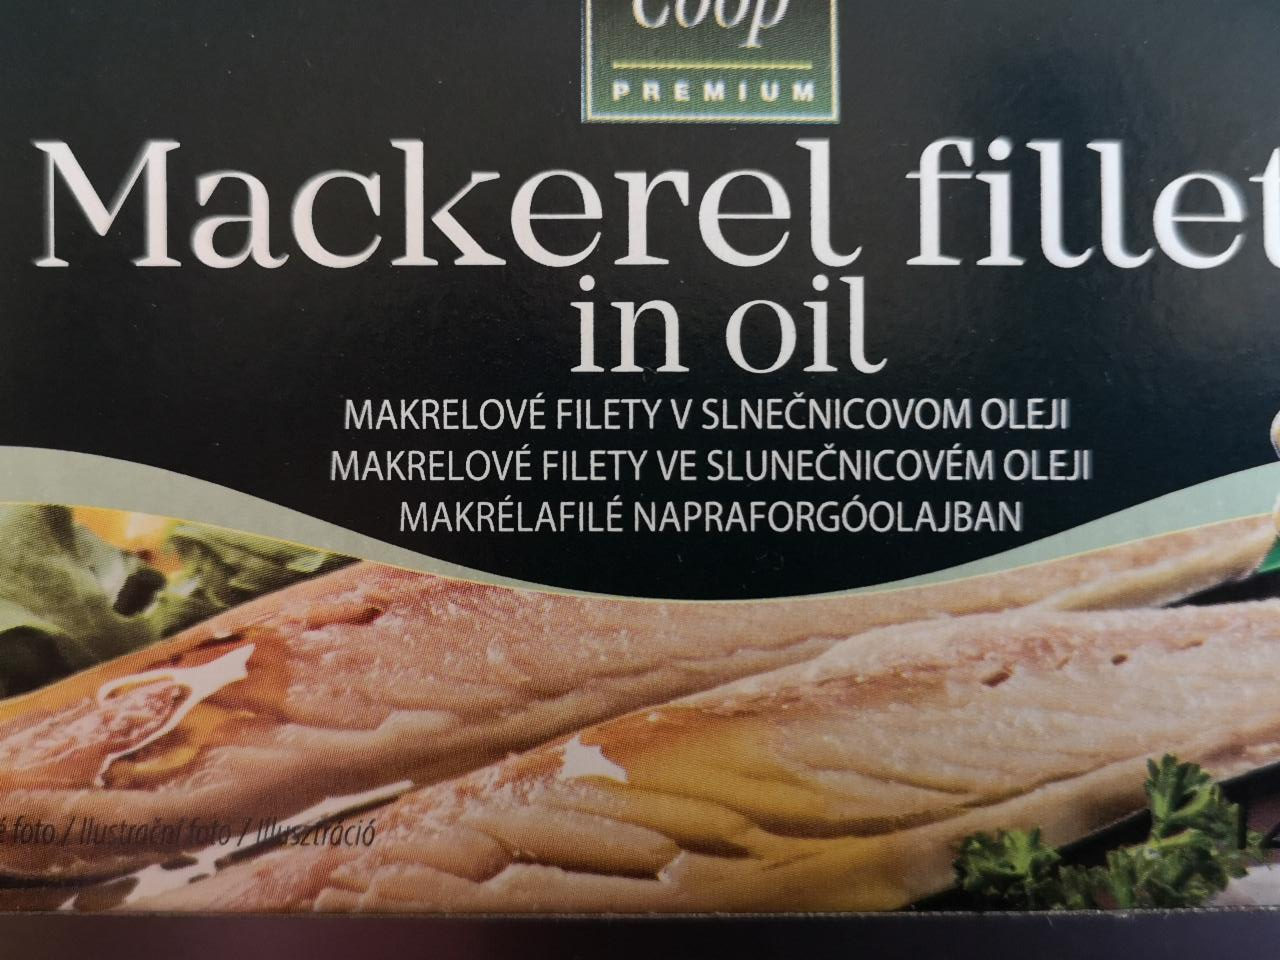 Fotografie - Mackerel fillets in oil Makrelové filety v slnečnicovom oleji Coop Premium